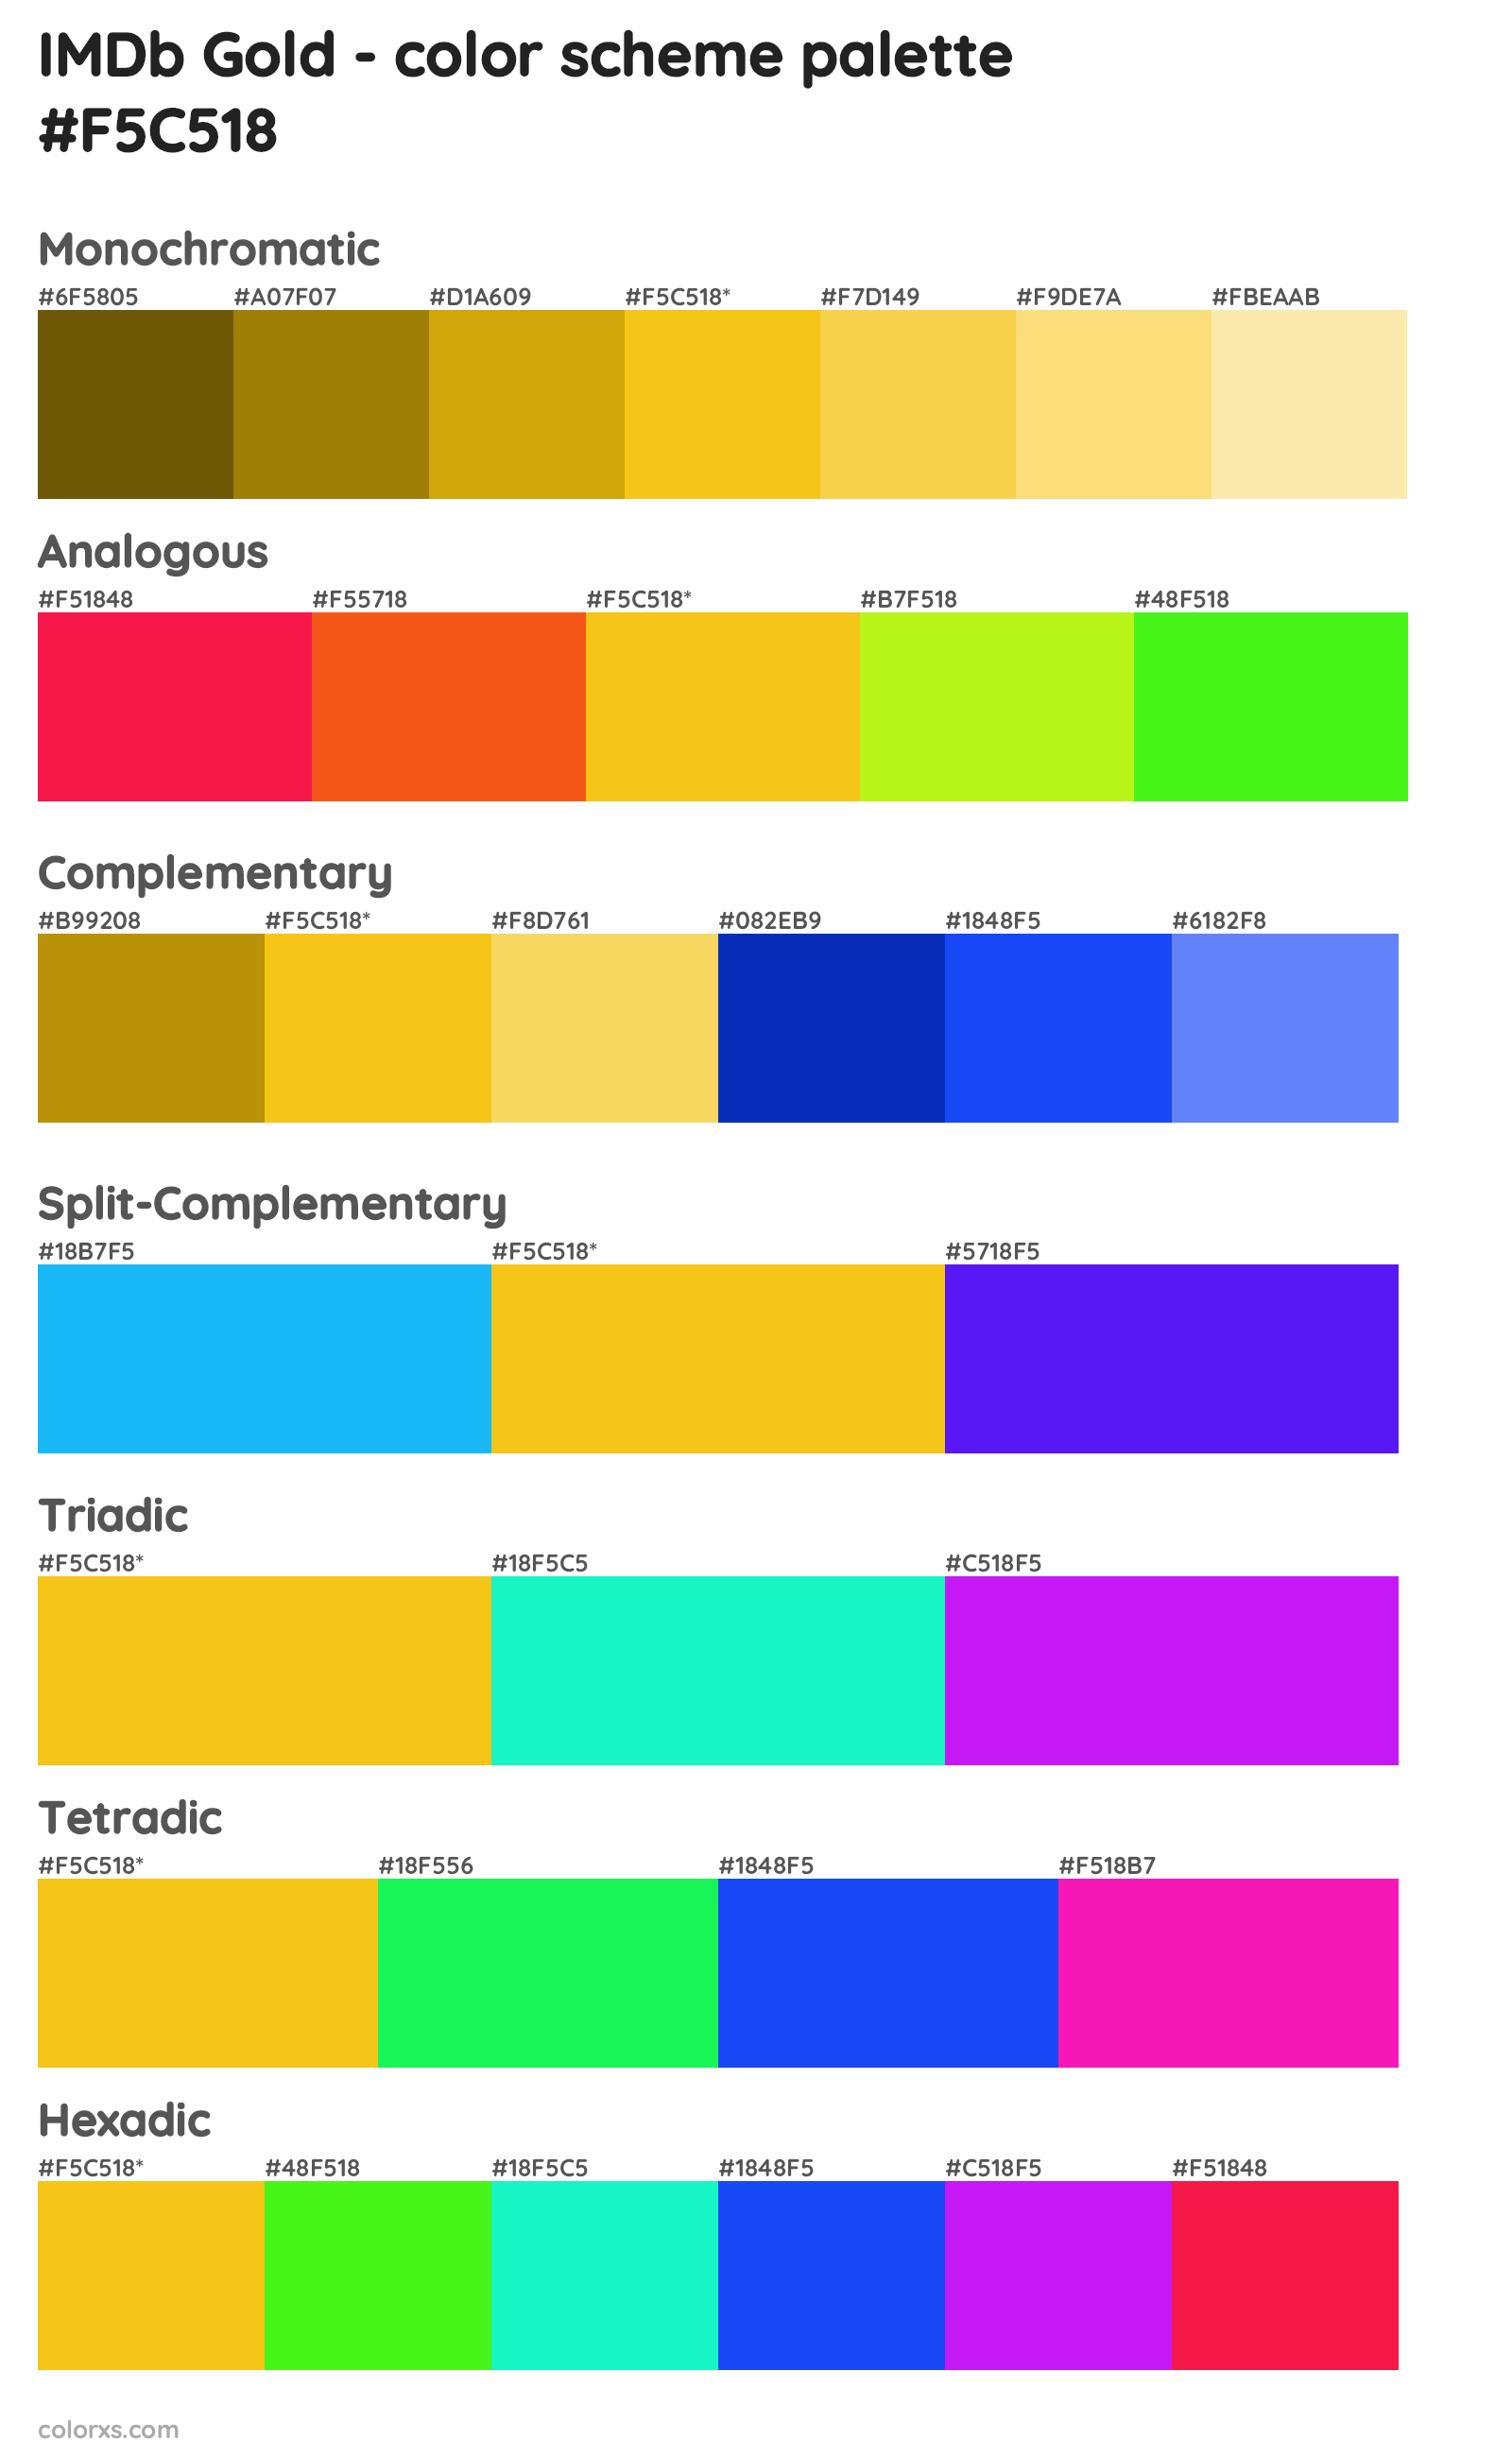 IMDb Gold Color Scheme Palettes